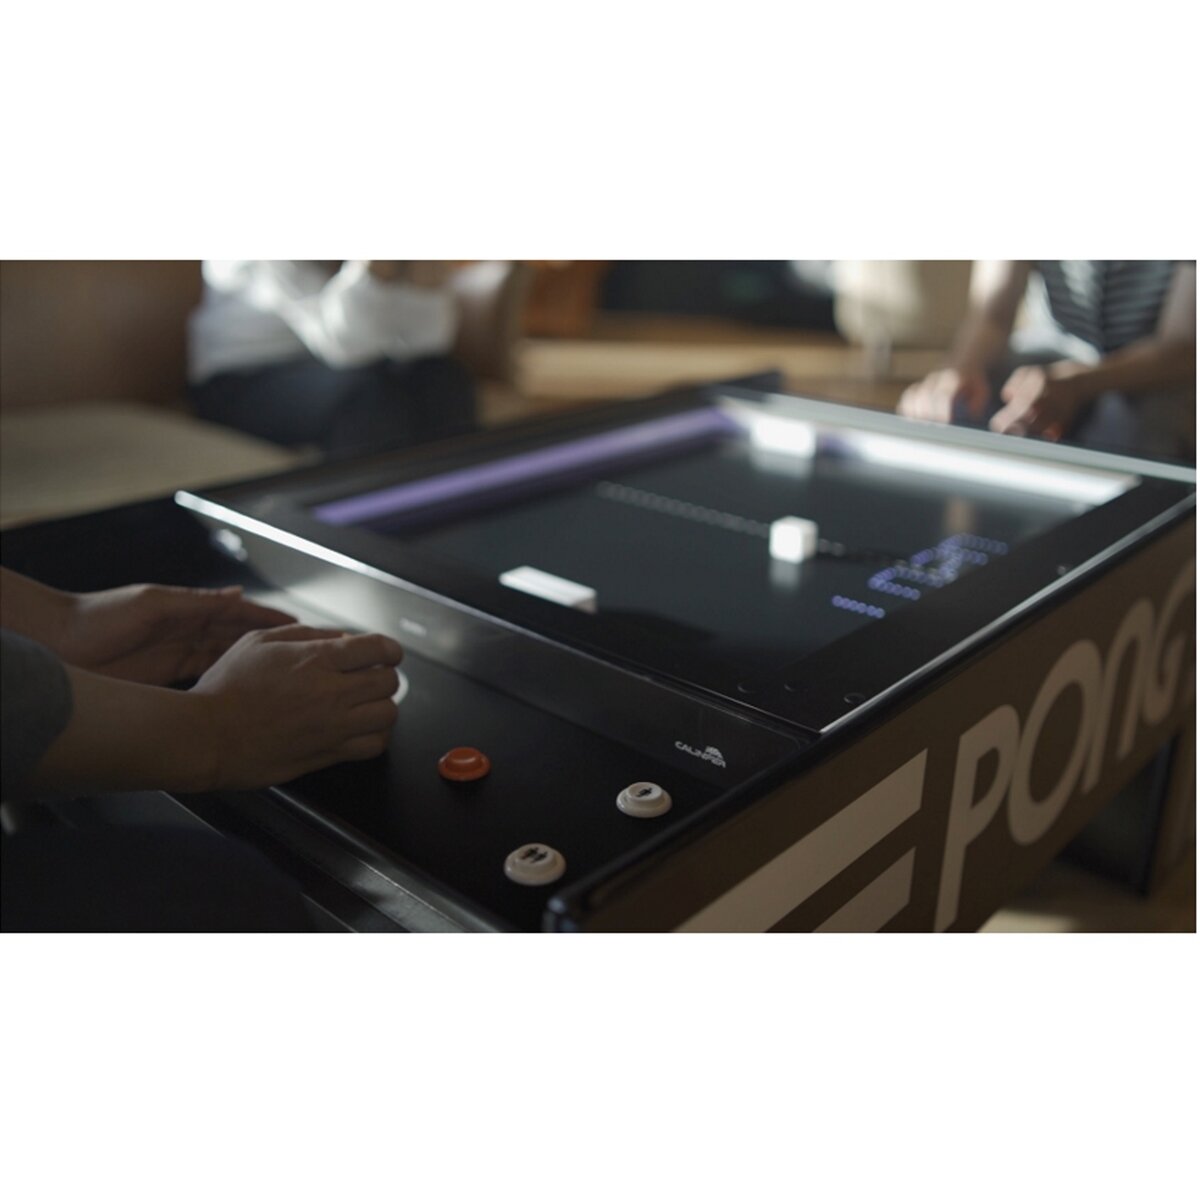 アタリ テーブル ポン (Pong)  レトロゲーム